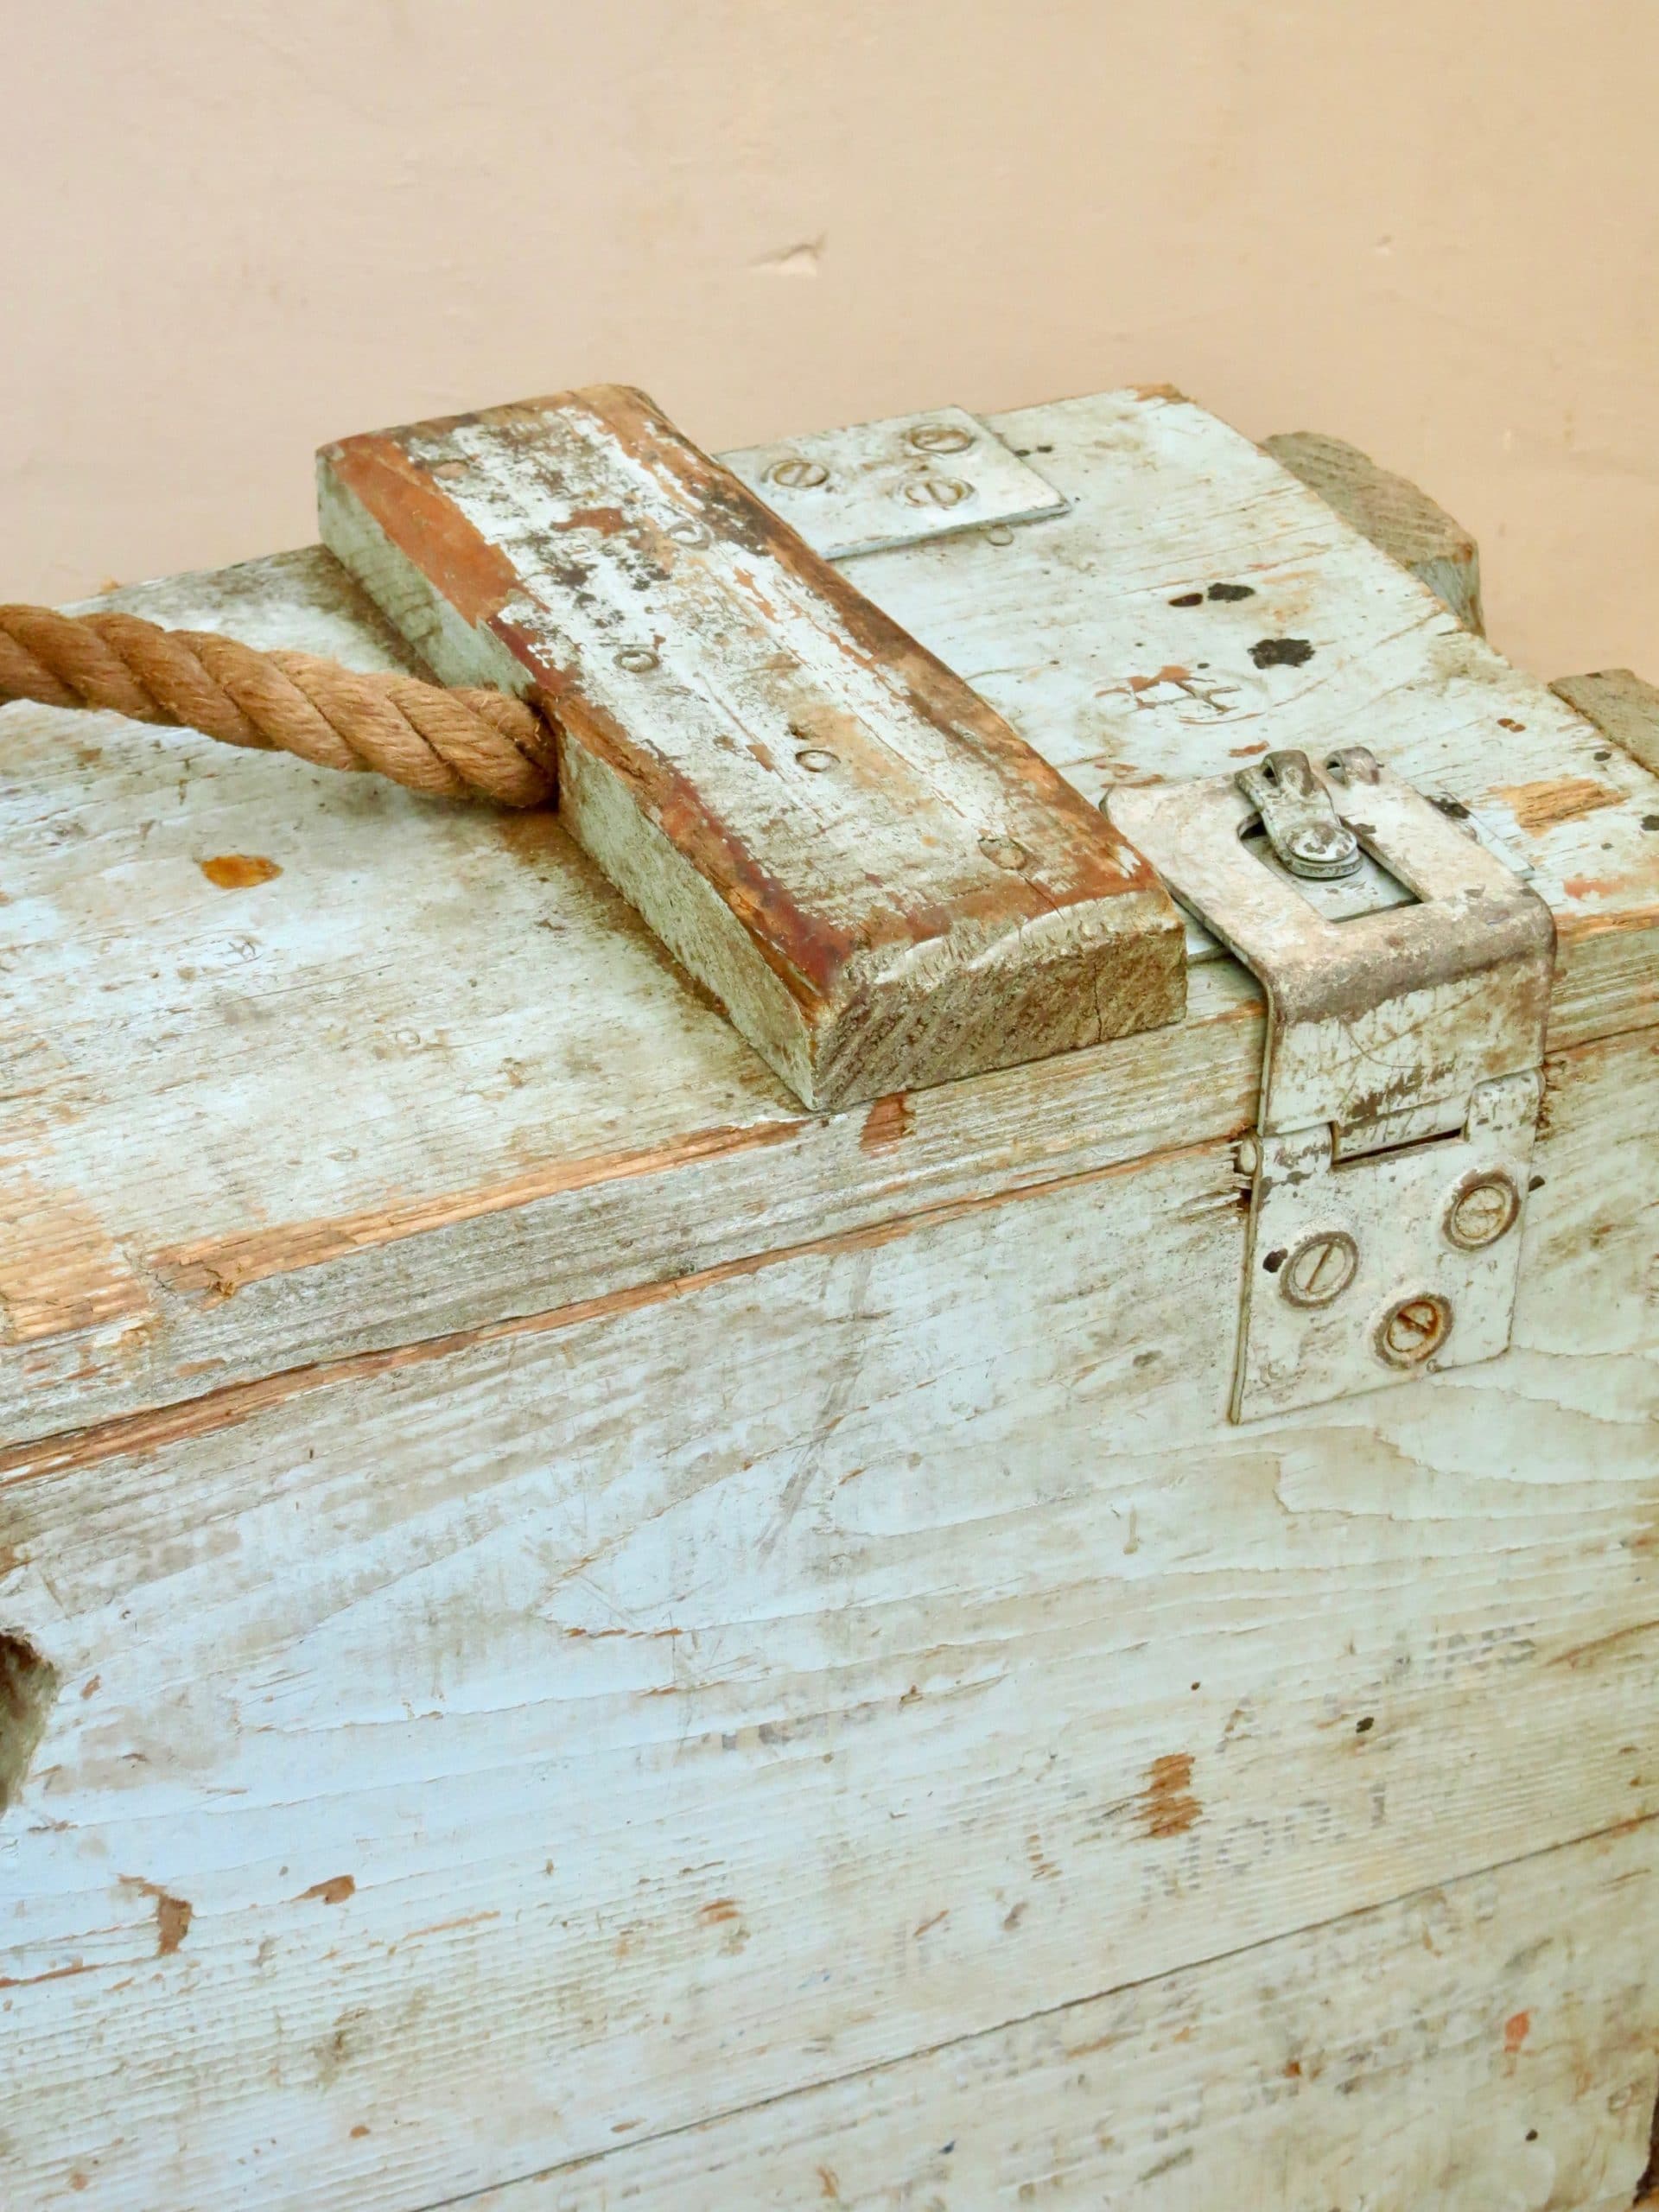 Ancienne caisse à cartouches militaire en bois - Caisses à